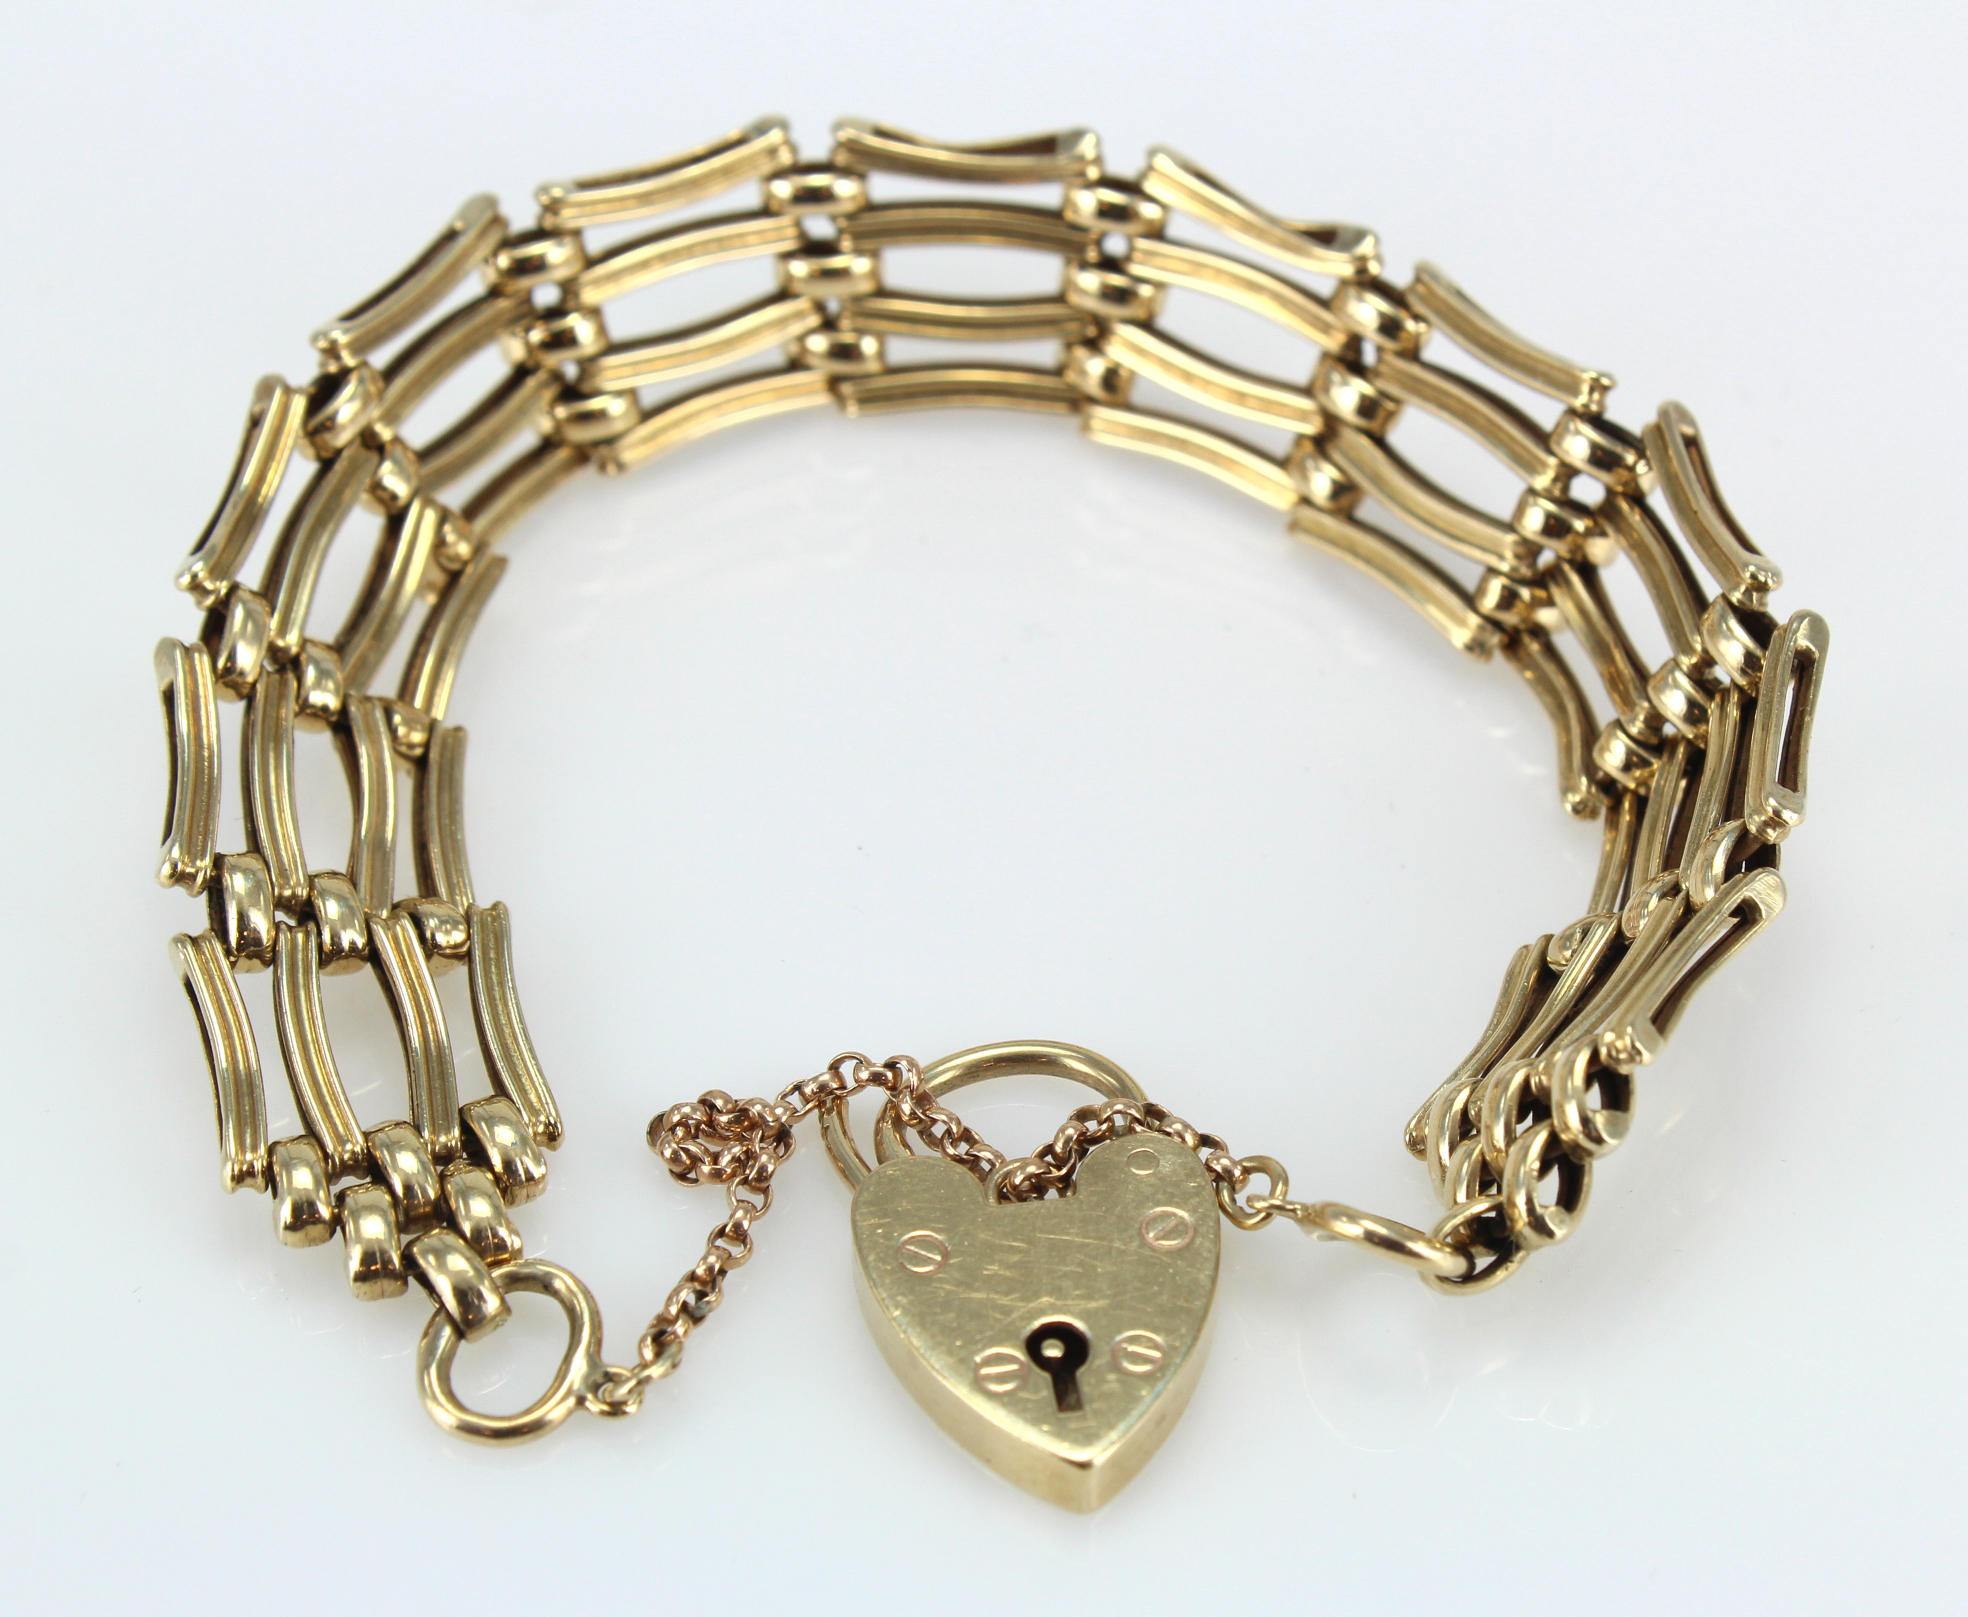 9ct gold four bar gate bracelet, weight 18.7g